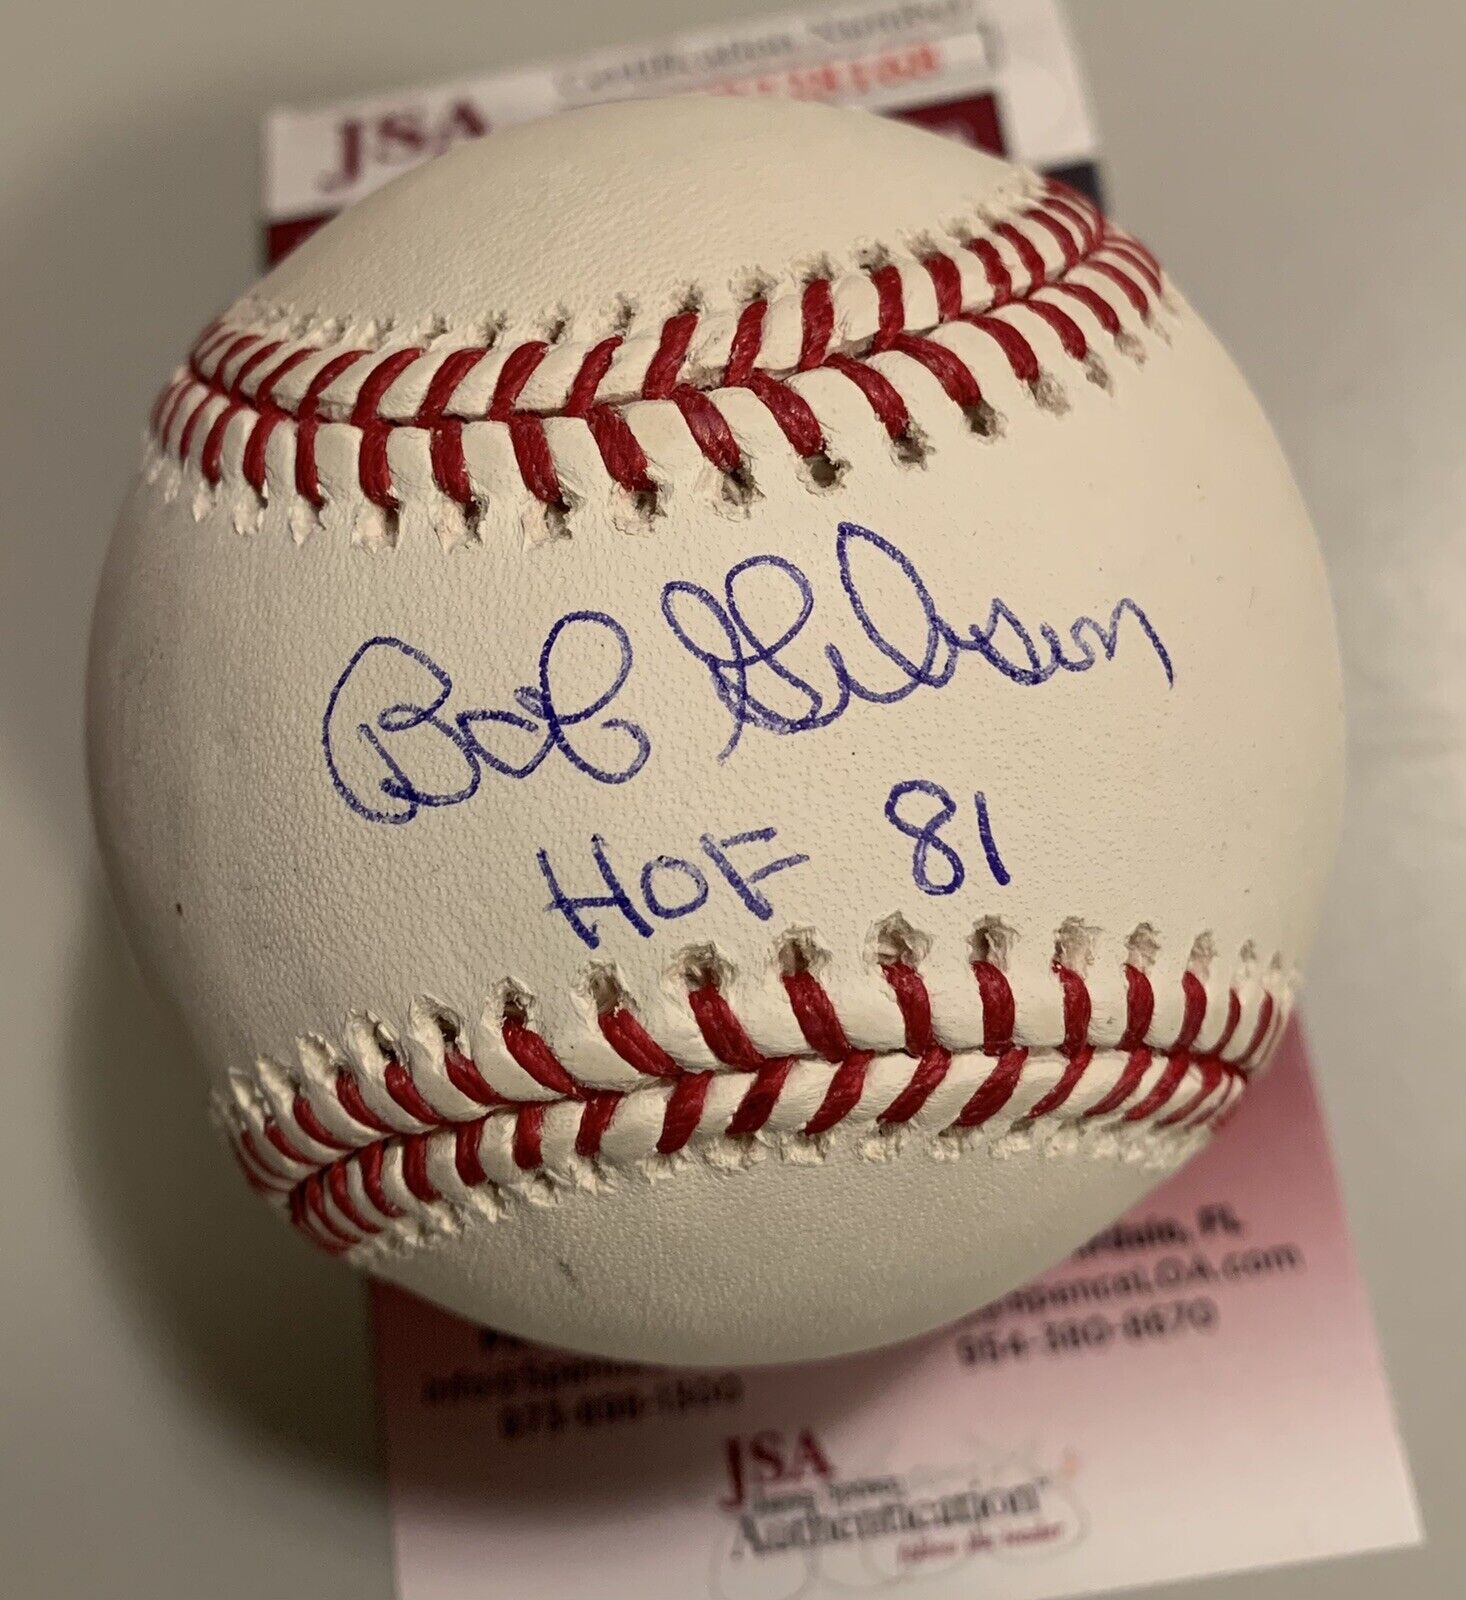 Bob Gibson Cardinals “HOF 81” Signed Official Major League Baseball JSA COA